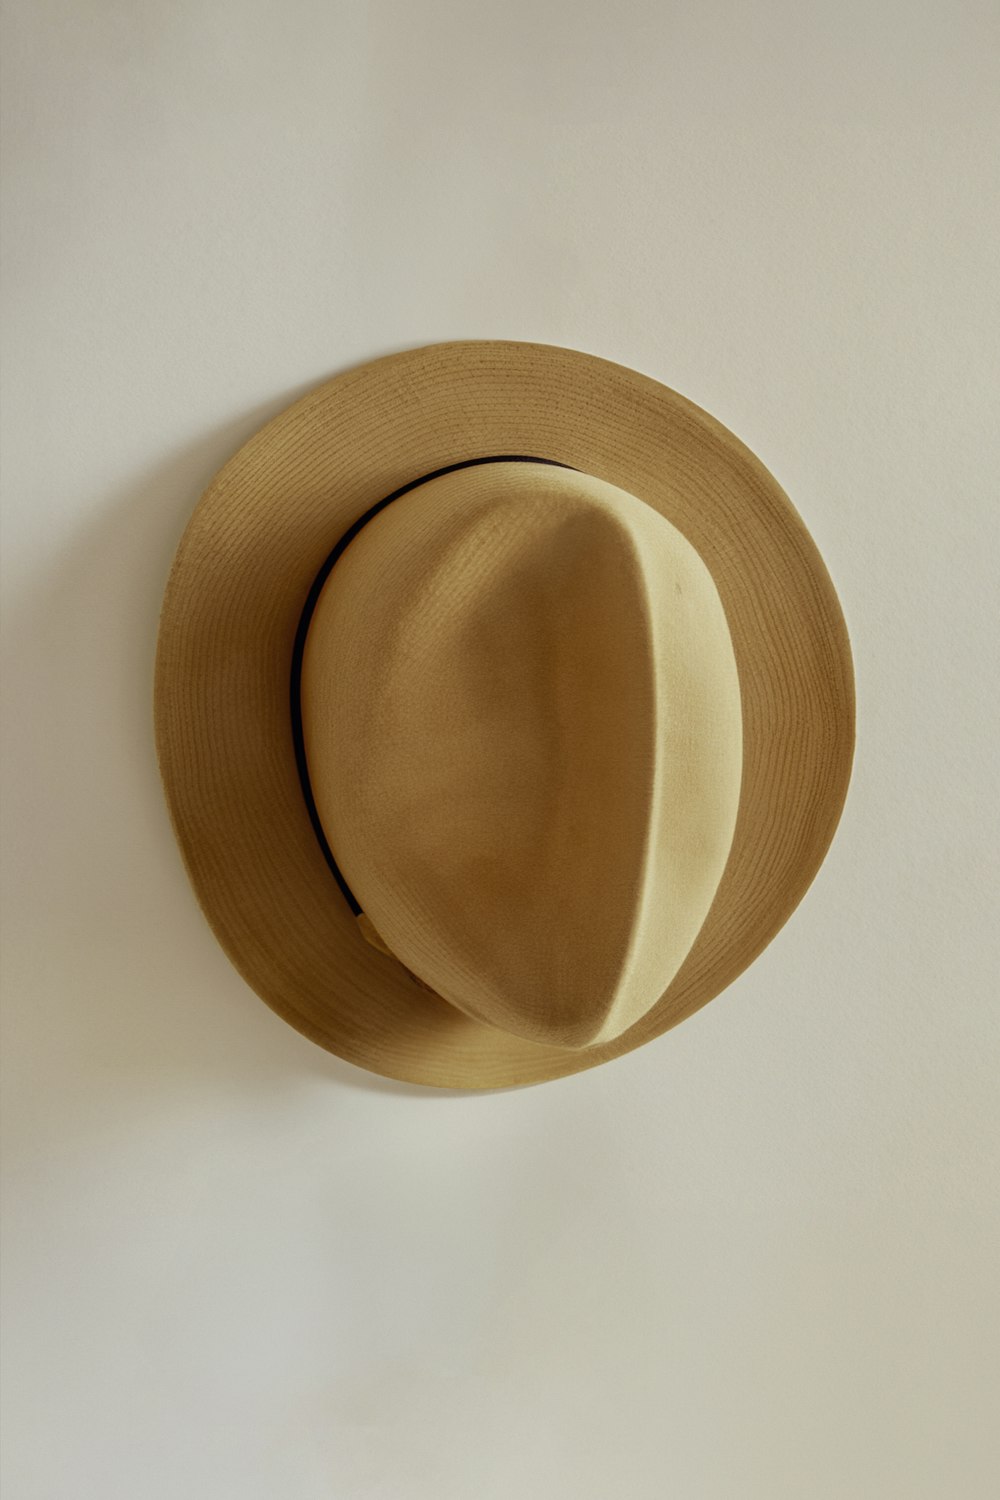 Un chapeau bronzé accroché à un mur blanc